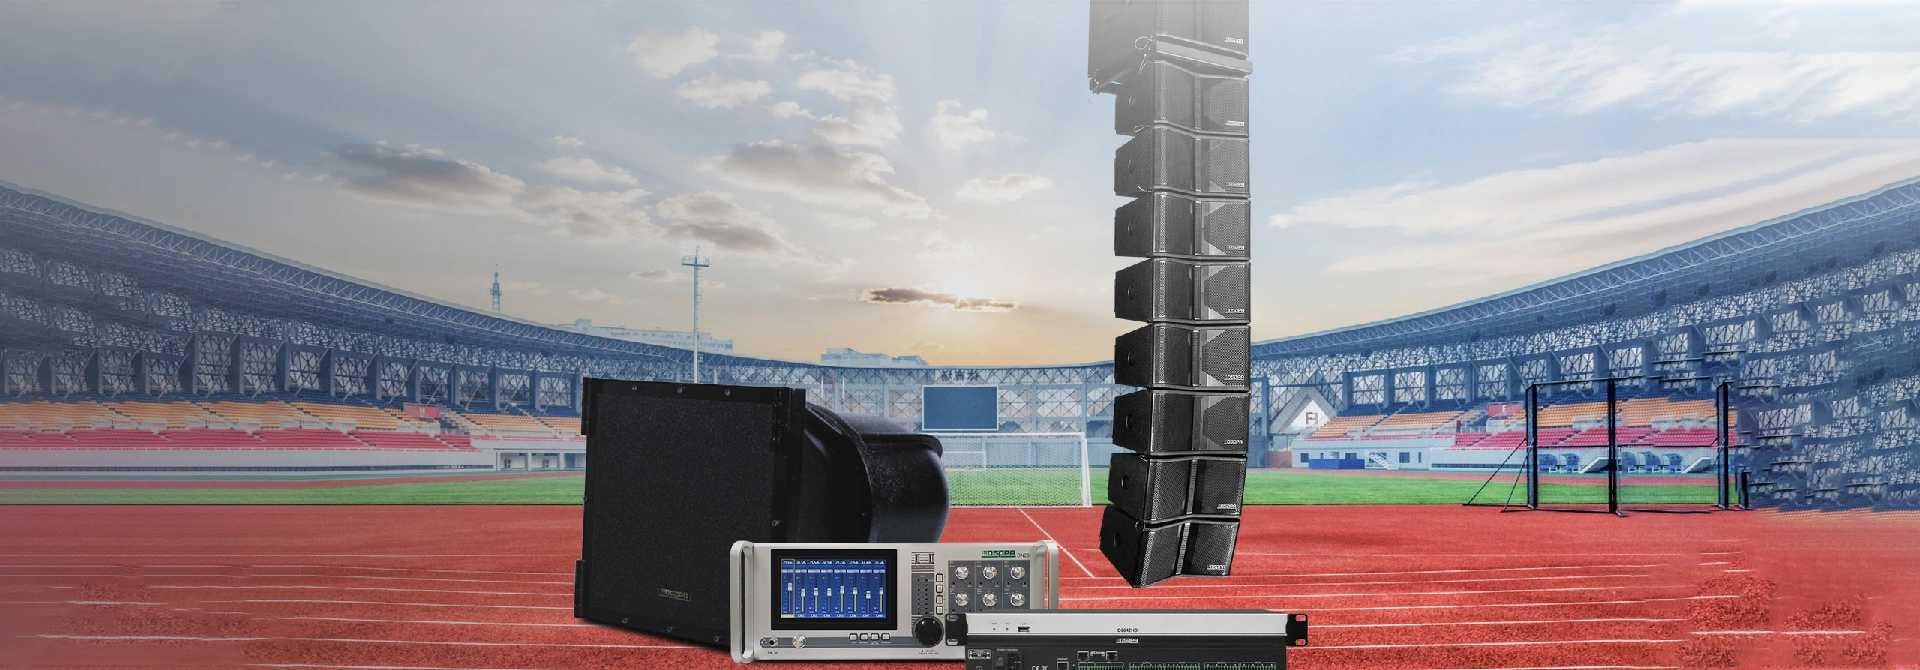 Профессиональное решение звуковой системы для больших наружных стадионов